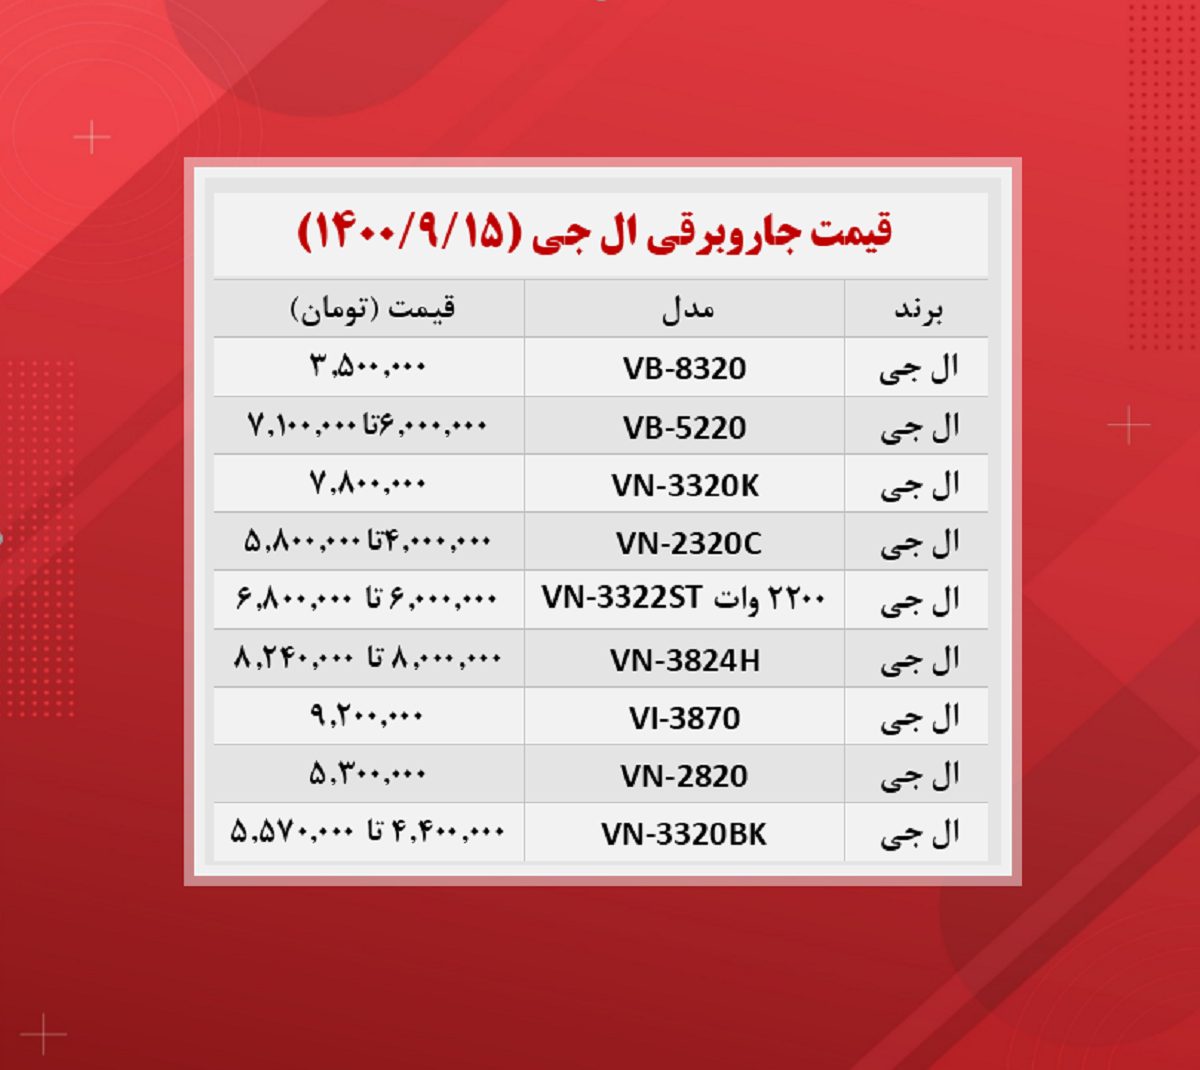 قیمت جاروبرقی (ال جی ۱۴۰۰/۹/۱۵)